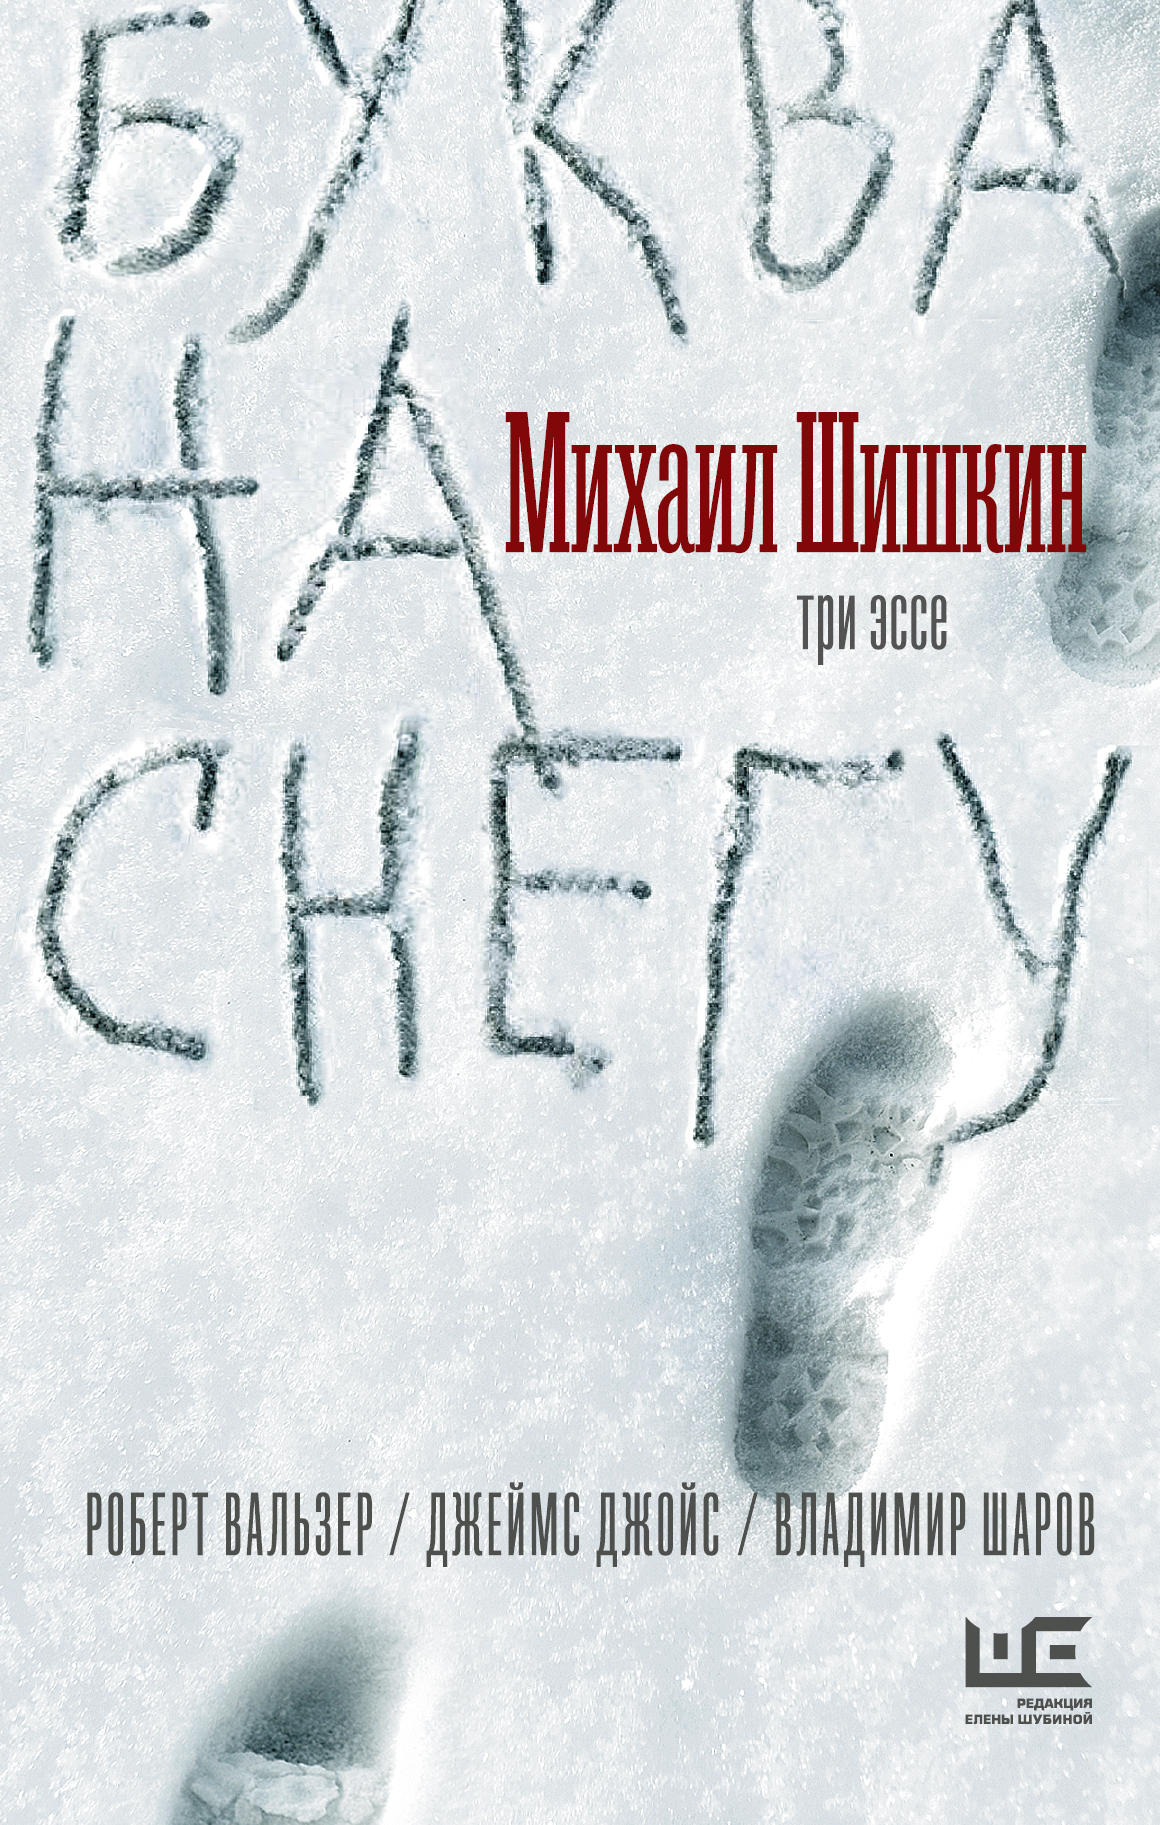 Шишкин Михаил - Буква на снегу скачать бесплатно